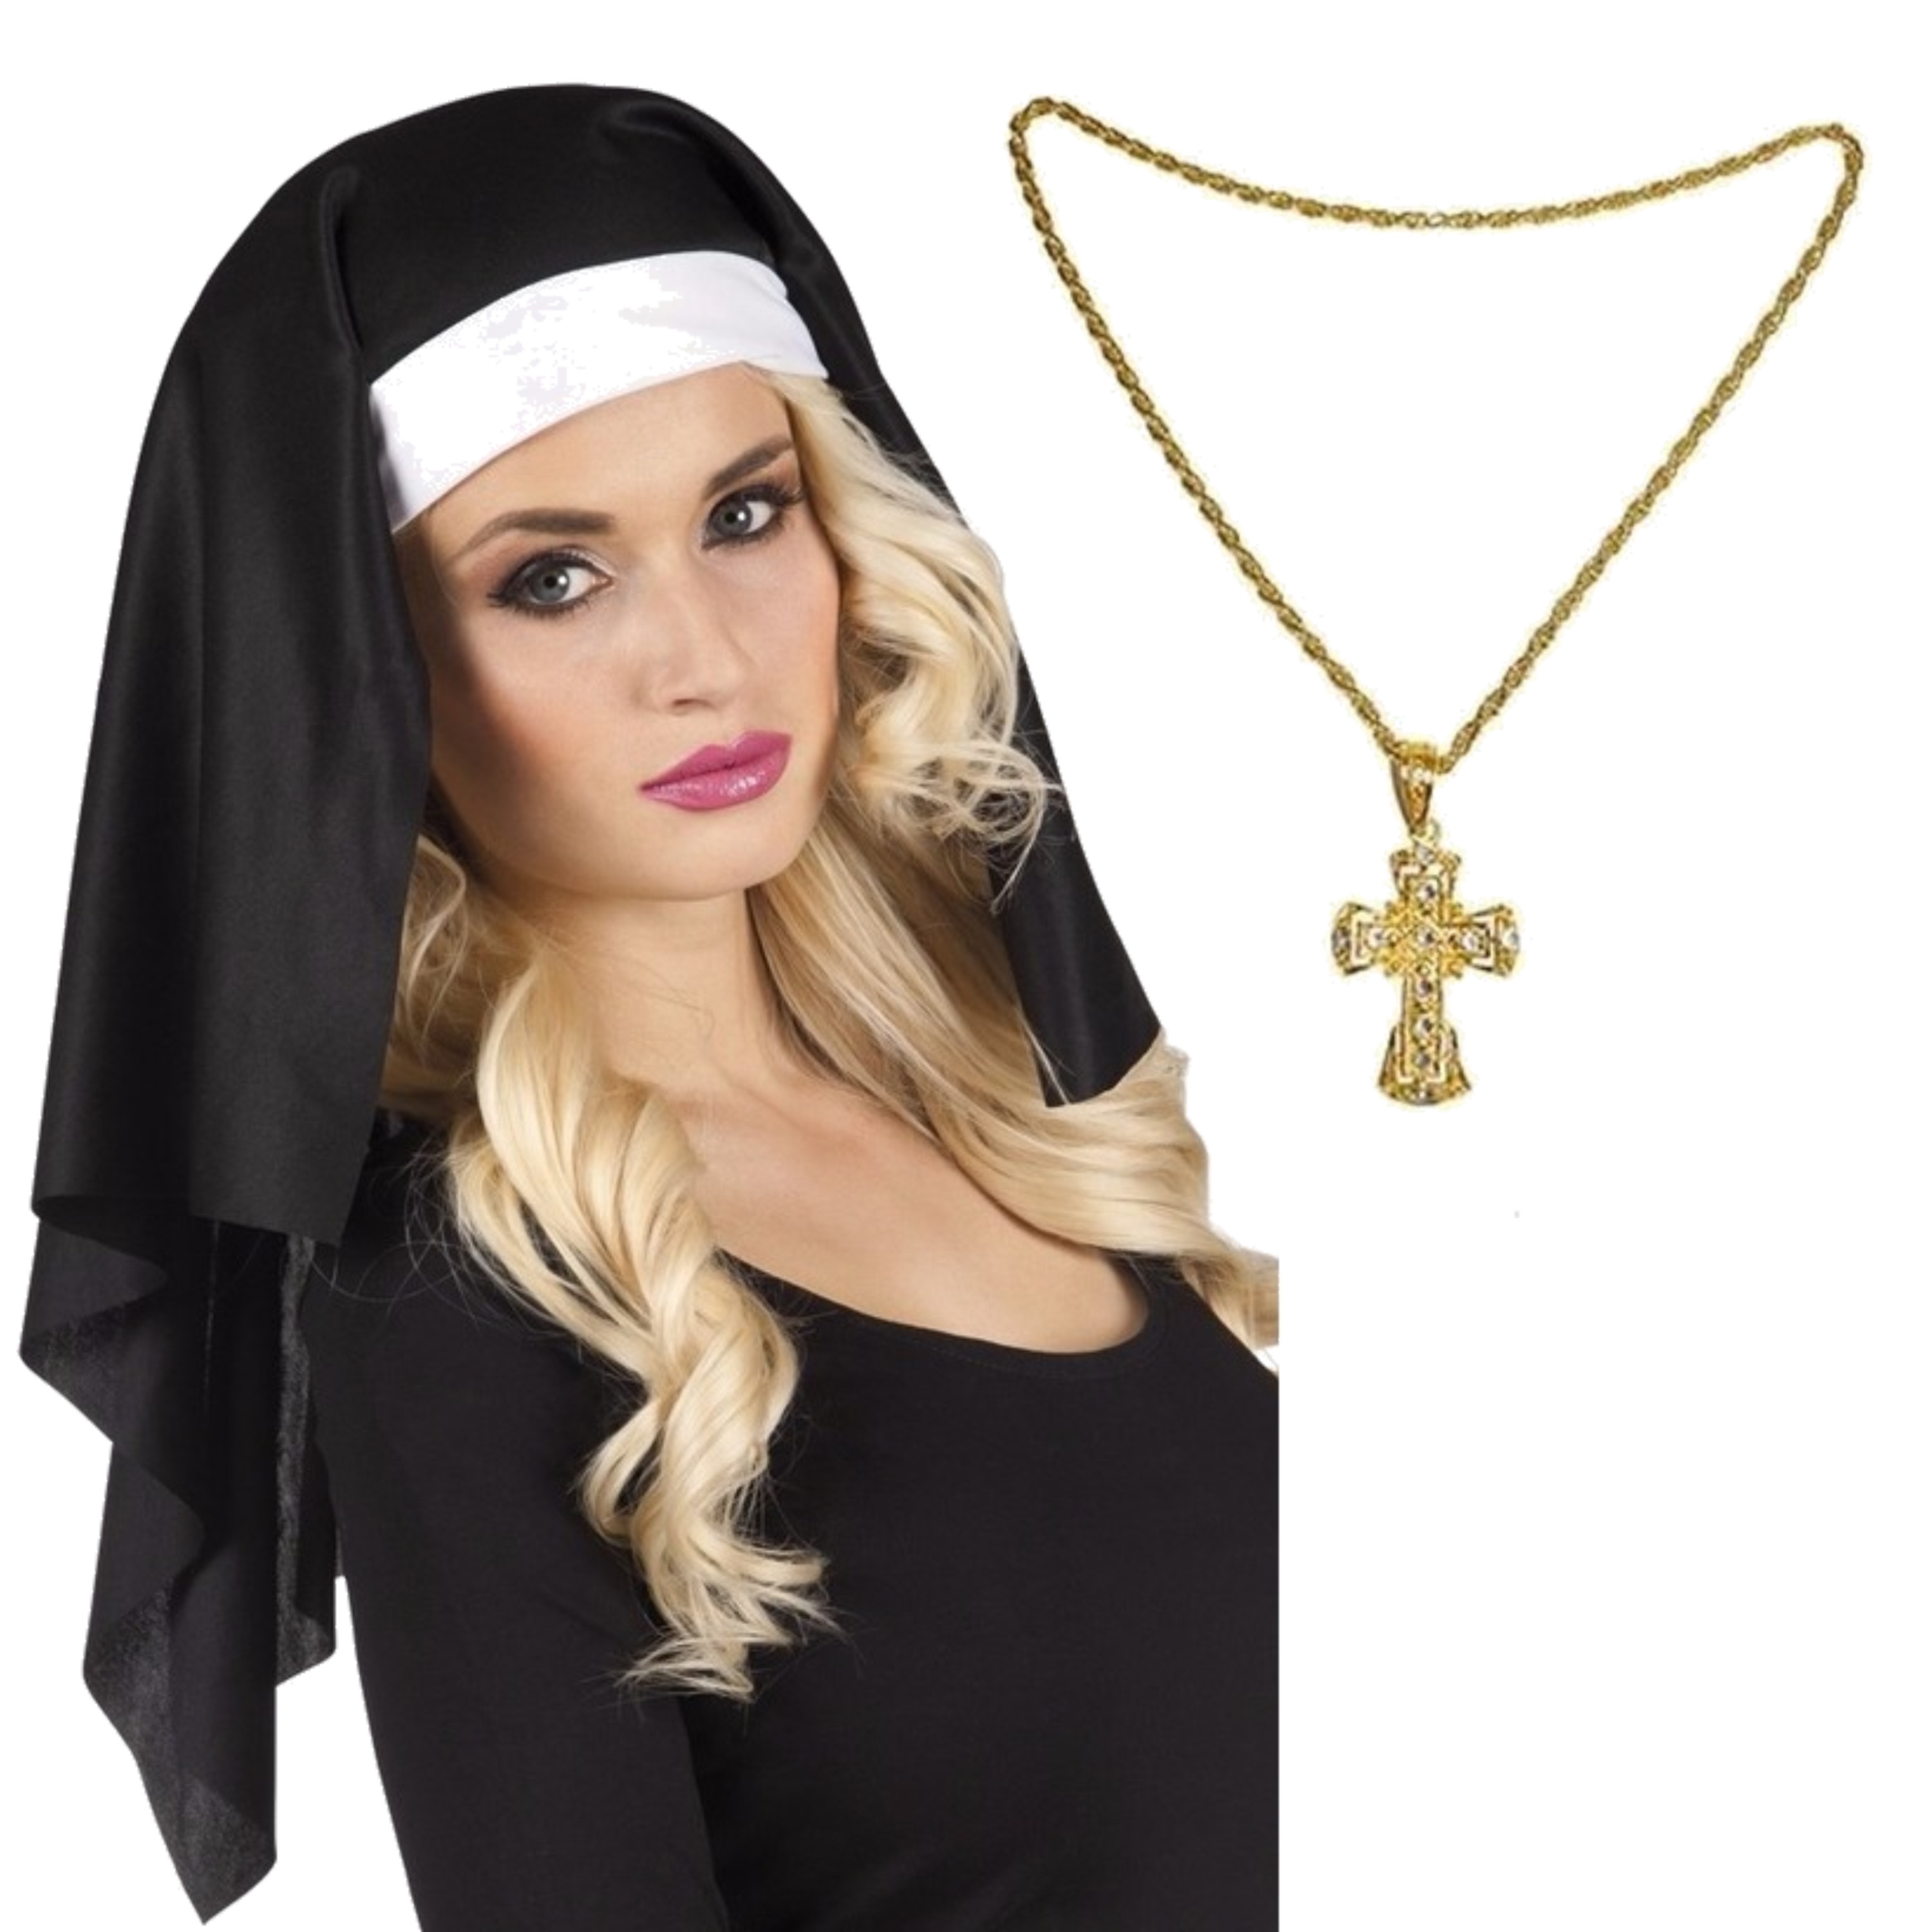 Nonnen carnaval verkleed setje van hoofdkap kraag en gouden kruis aan ketting